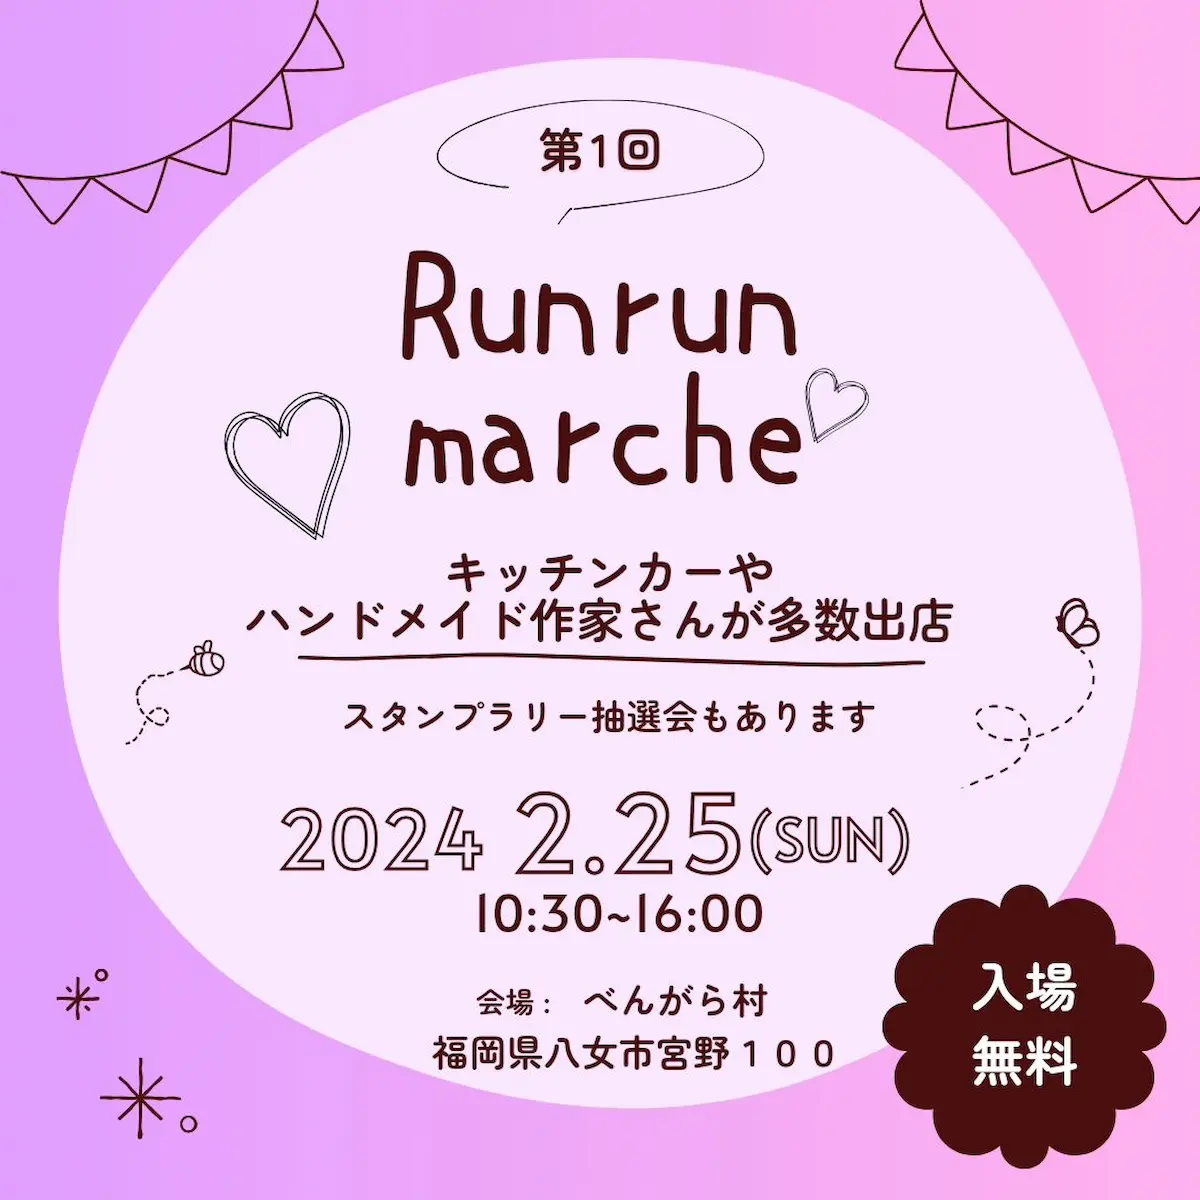 Runrun marche